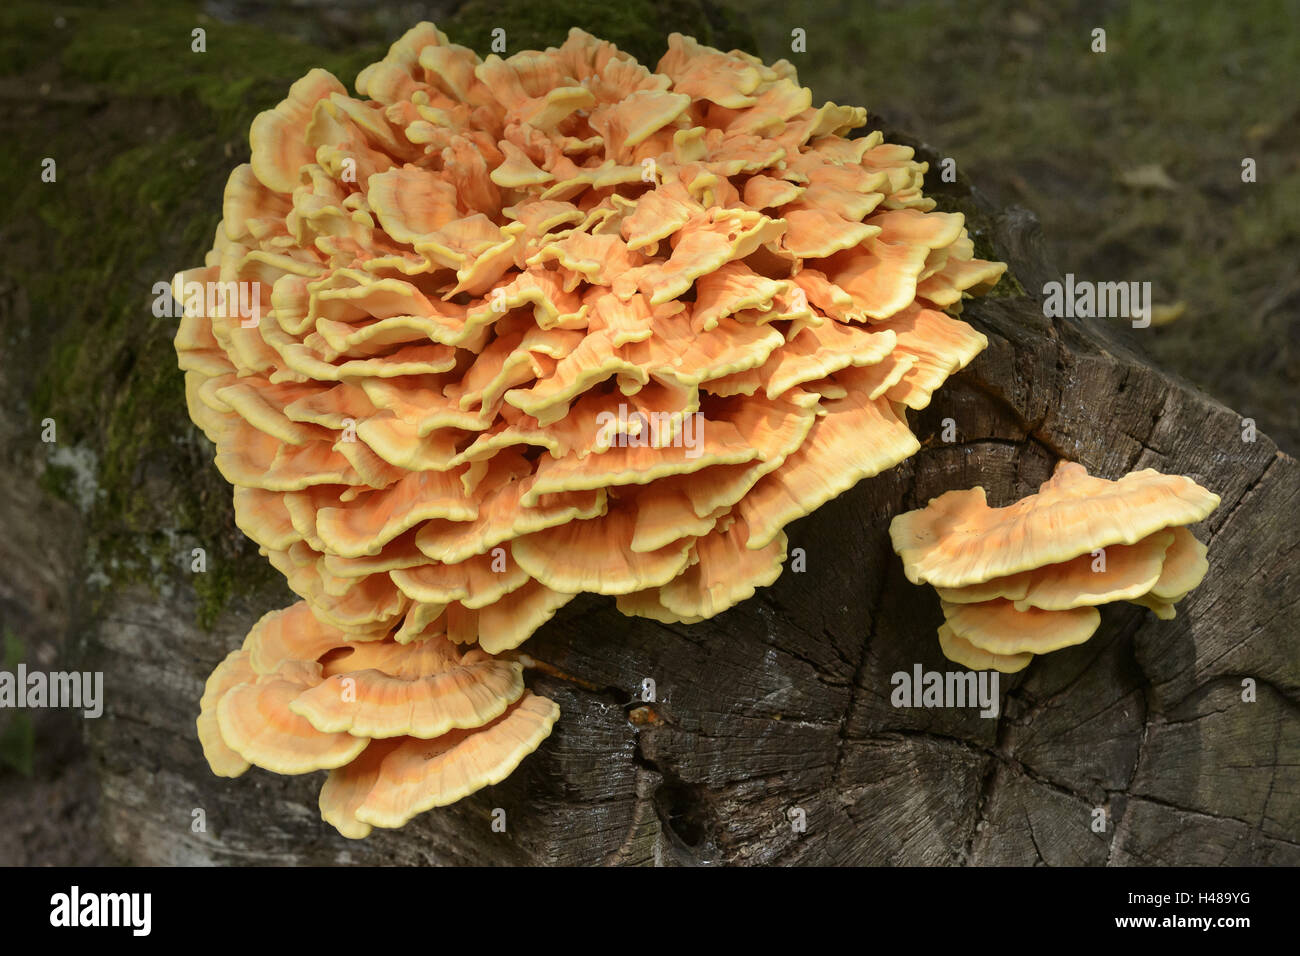 Tree fungus, Laetiporus sulphureus, Stock Photo